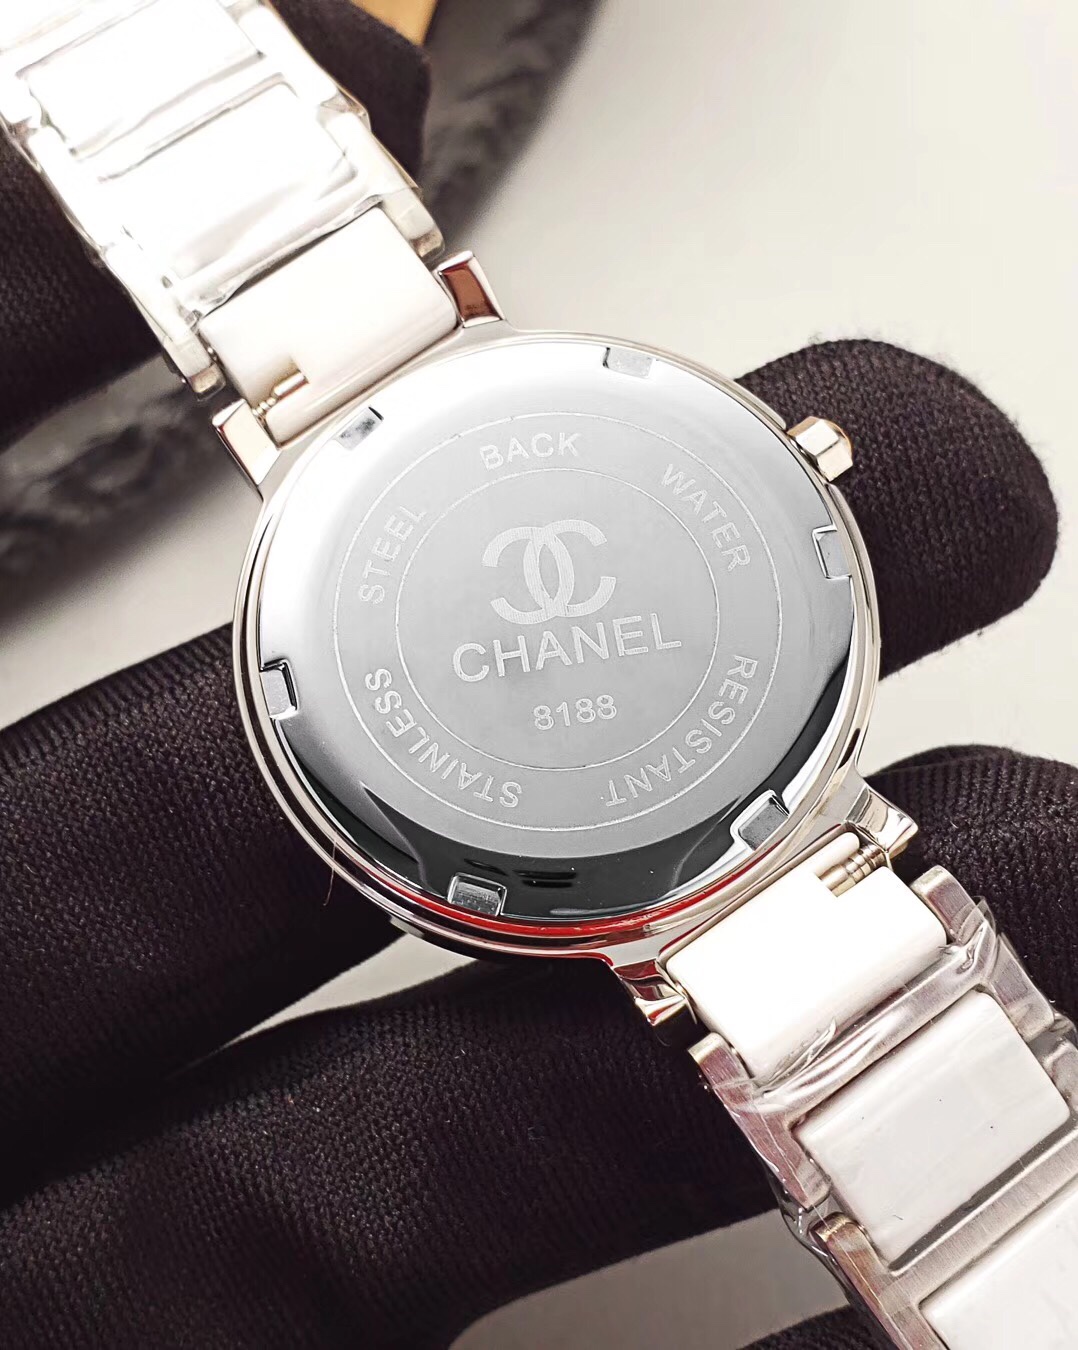 スーパーコピー20190226134807862 84964358 - Chanel シャネル 腕時計 時計 レディース 定番人気商品 CH-TSH270-038必ず届く代引き優良サイト